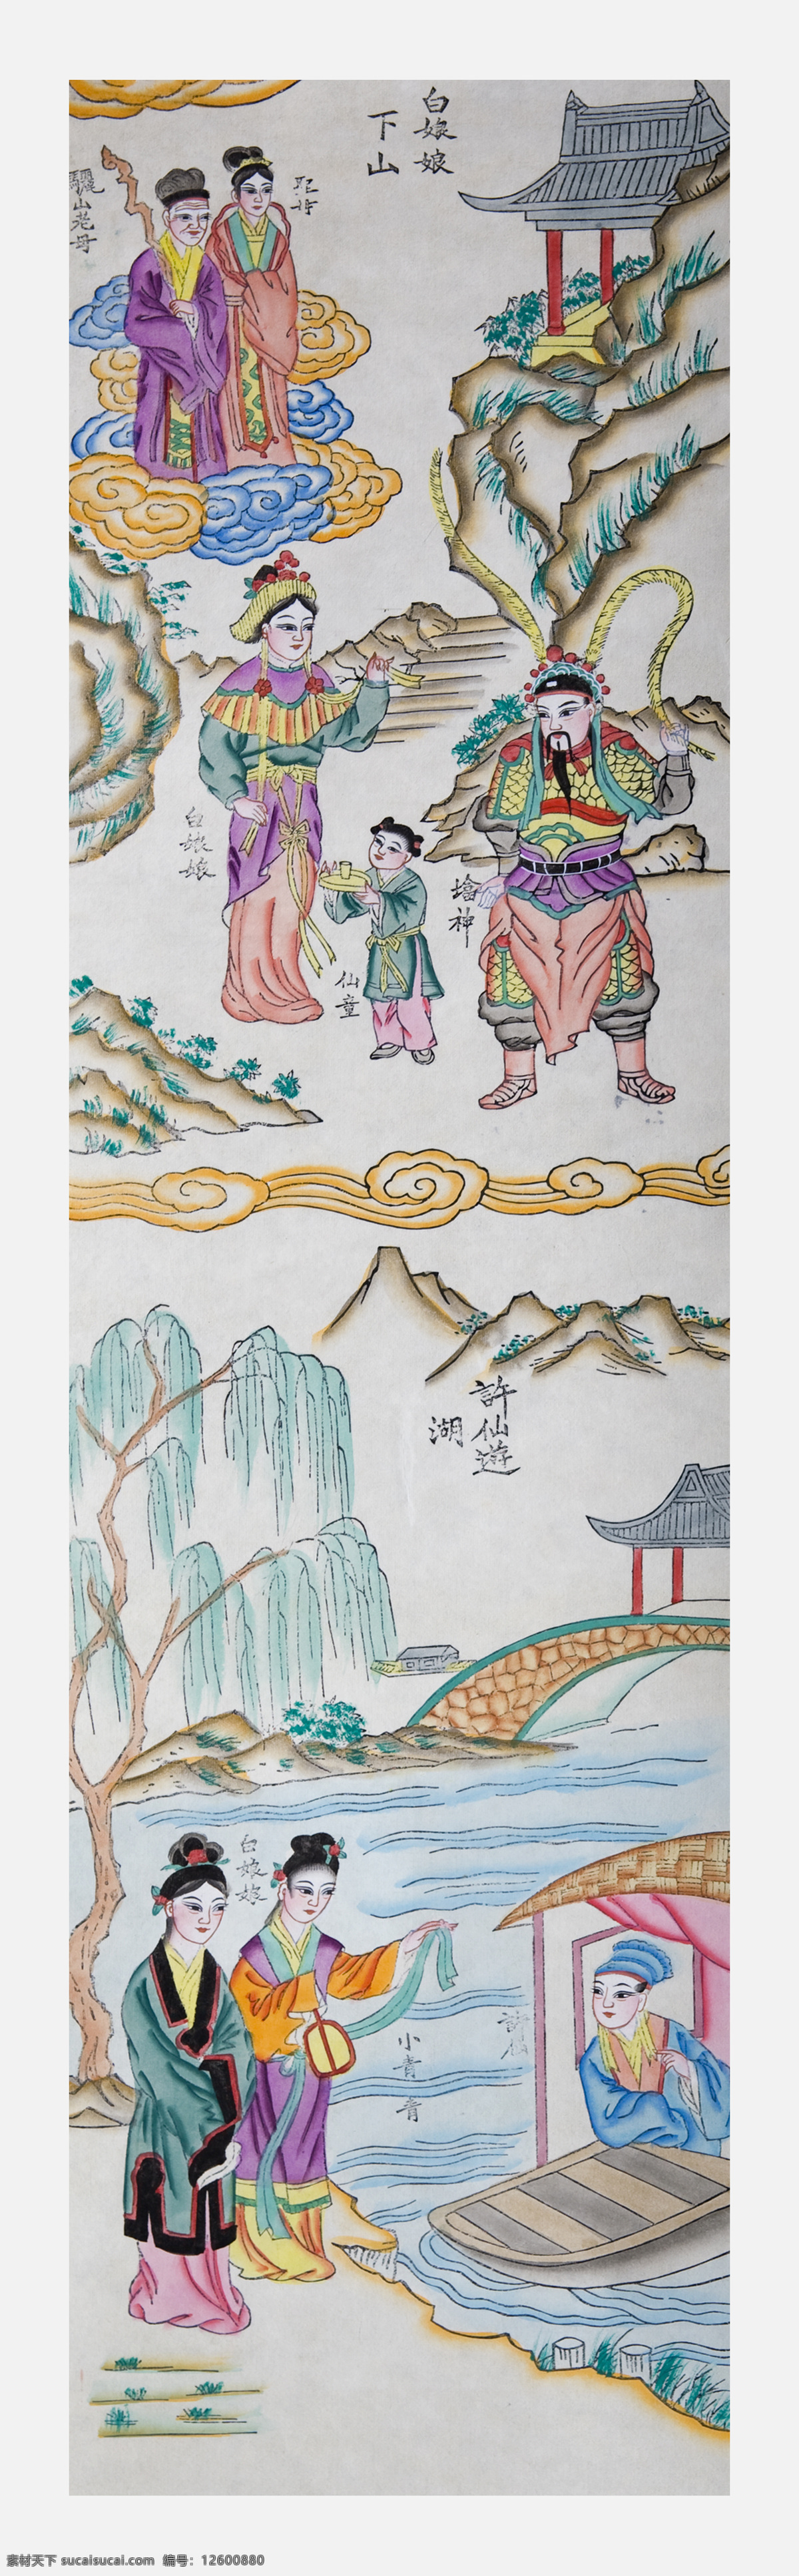 杨家埠 木版年画 年画 民俗 门神 潍坊 艺术 传统文化 文化艺术